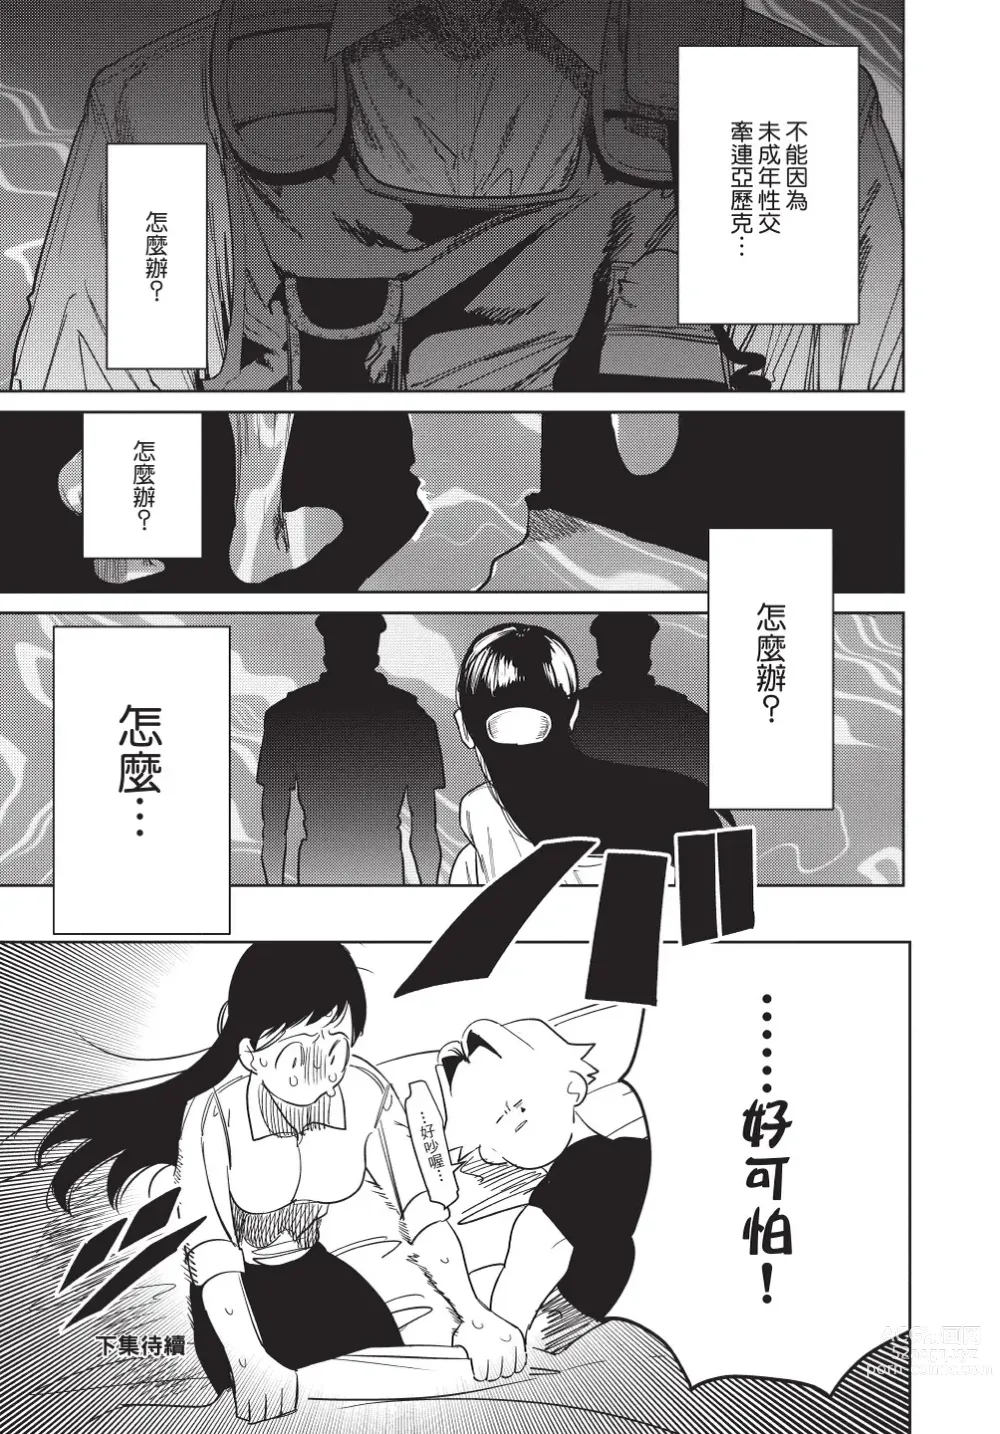 Page 215 of manga 在異世界旅途中拯救我的是一名少年殺手